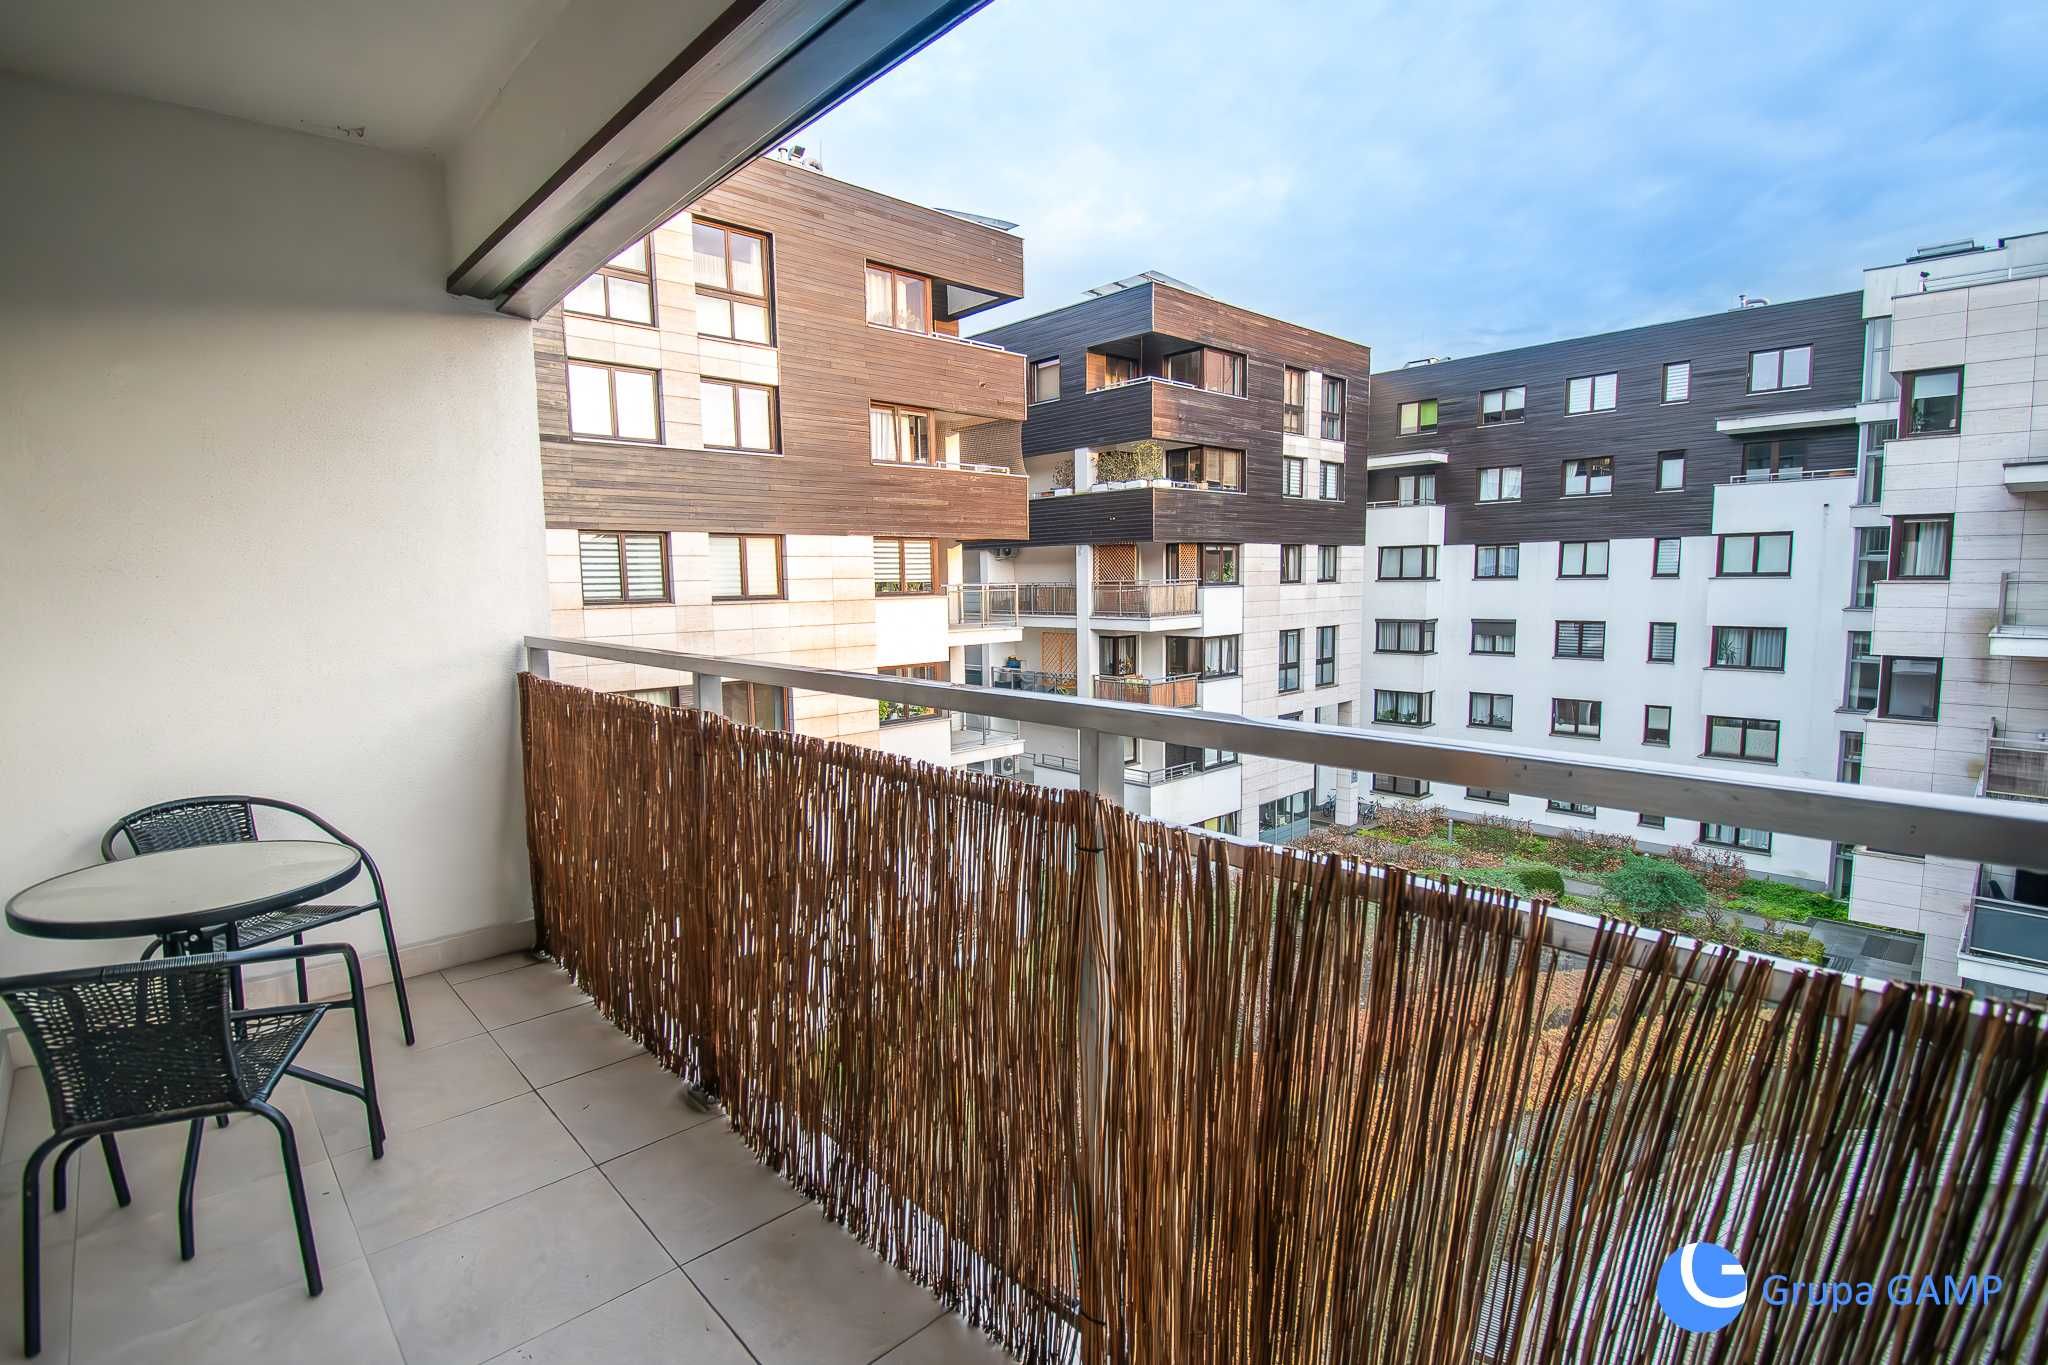 Studio z balkonem na patio|Nowe BudownictwoUP|Miasteczko AGH